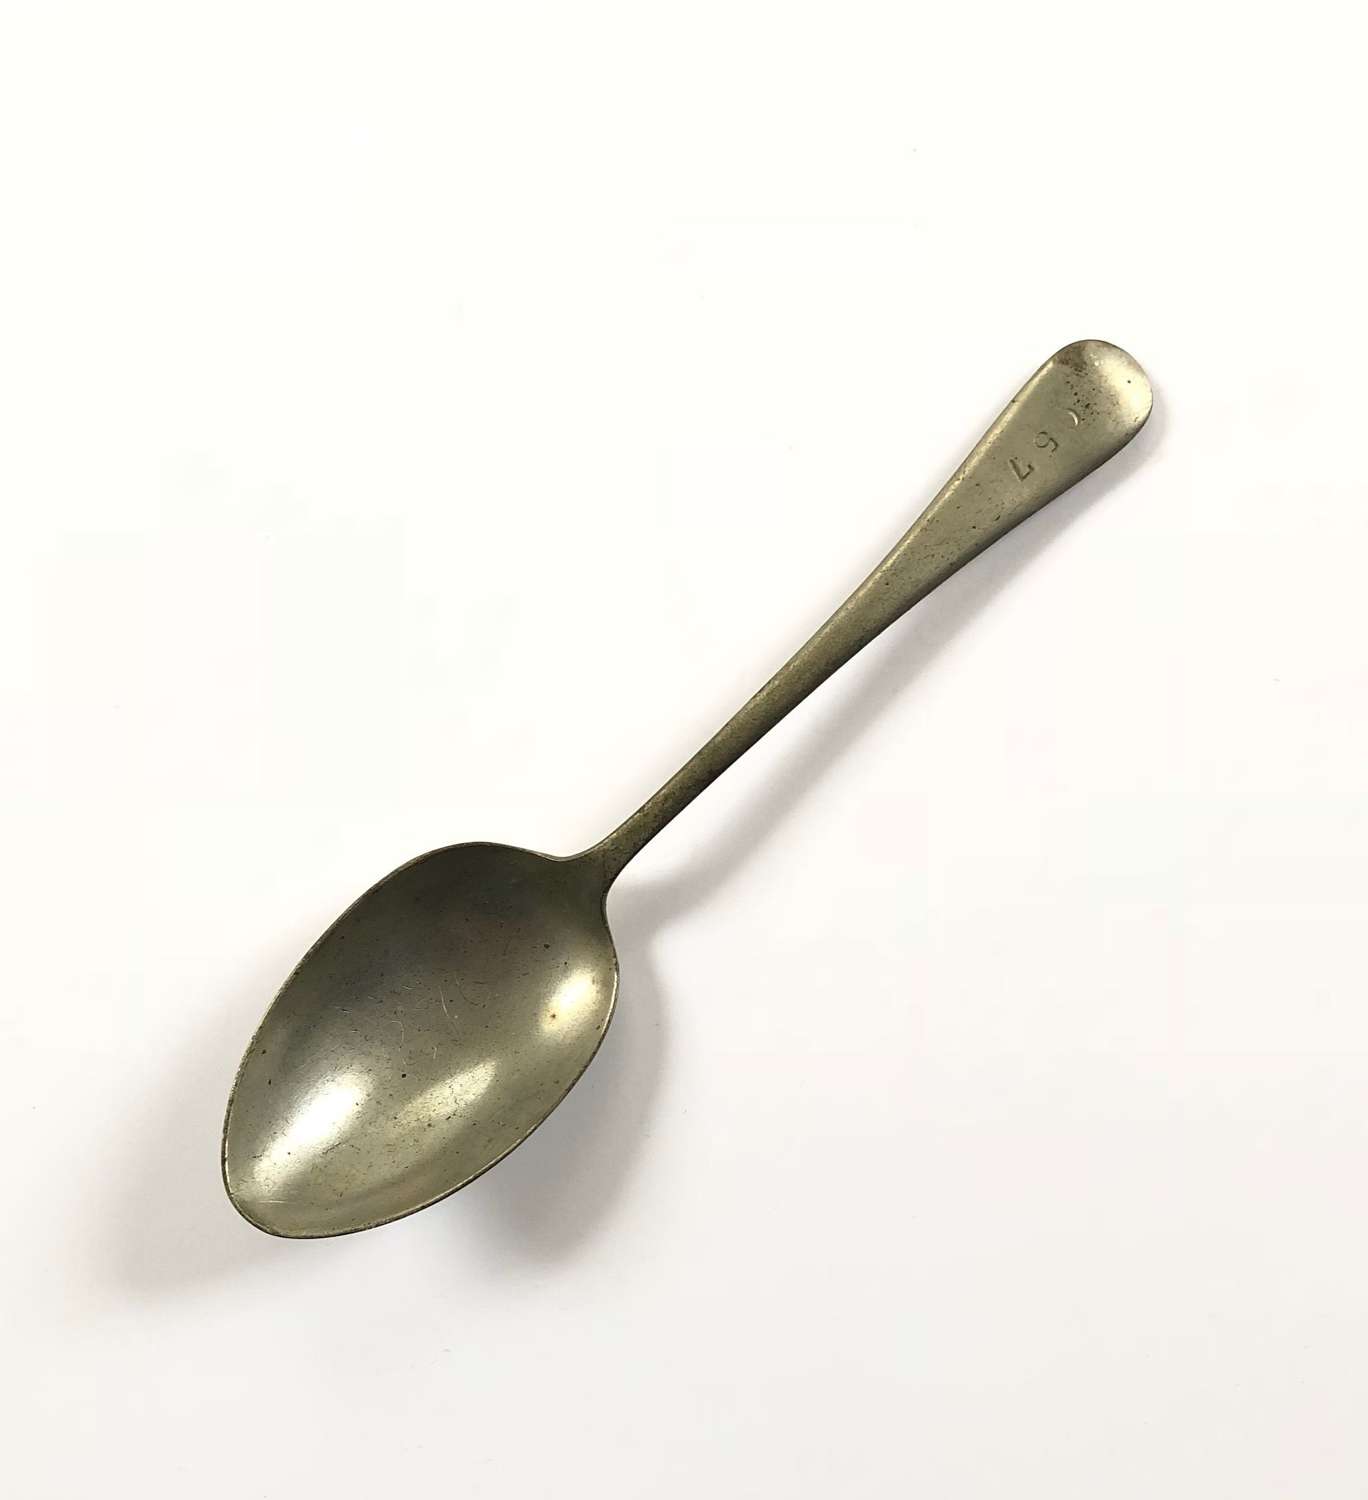 WW2 Period RAF Issue Airman’s Spoon.